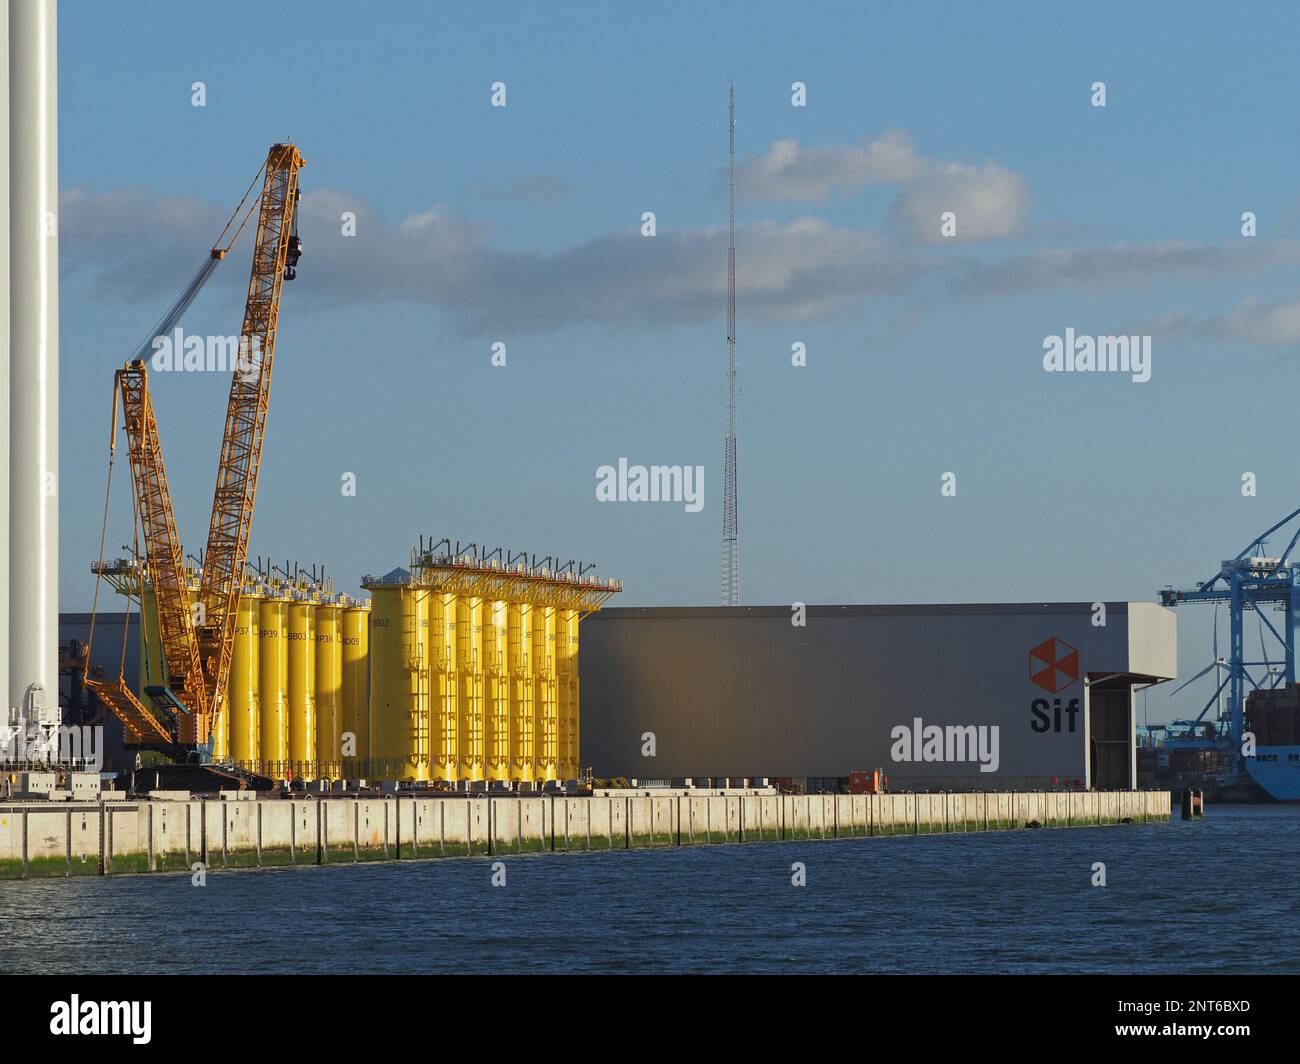 Fabbrica SIF che produce pezzi per fattorie a vento in mare, di dimensioni enormi. Le parti gialle sono parti di fondazione del mulino a vento. Maasvlakte 2, Porto di Foto Stock